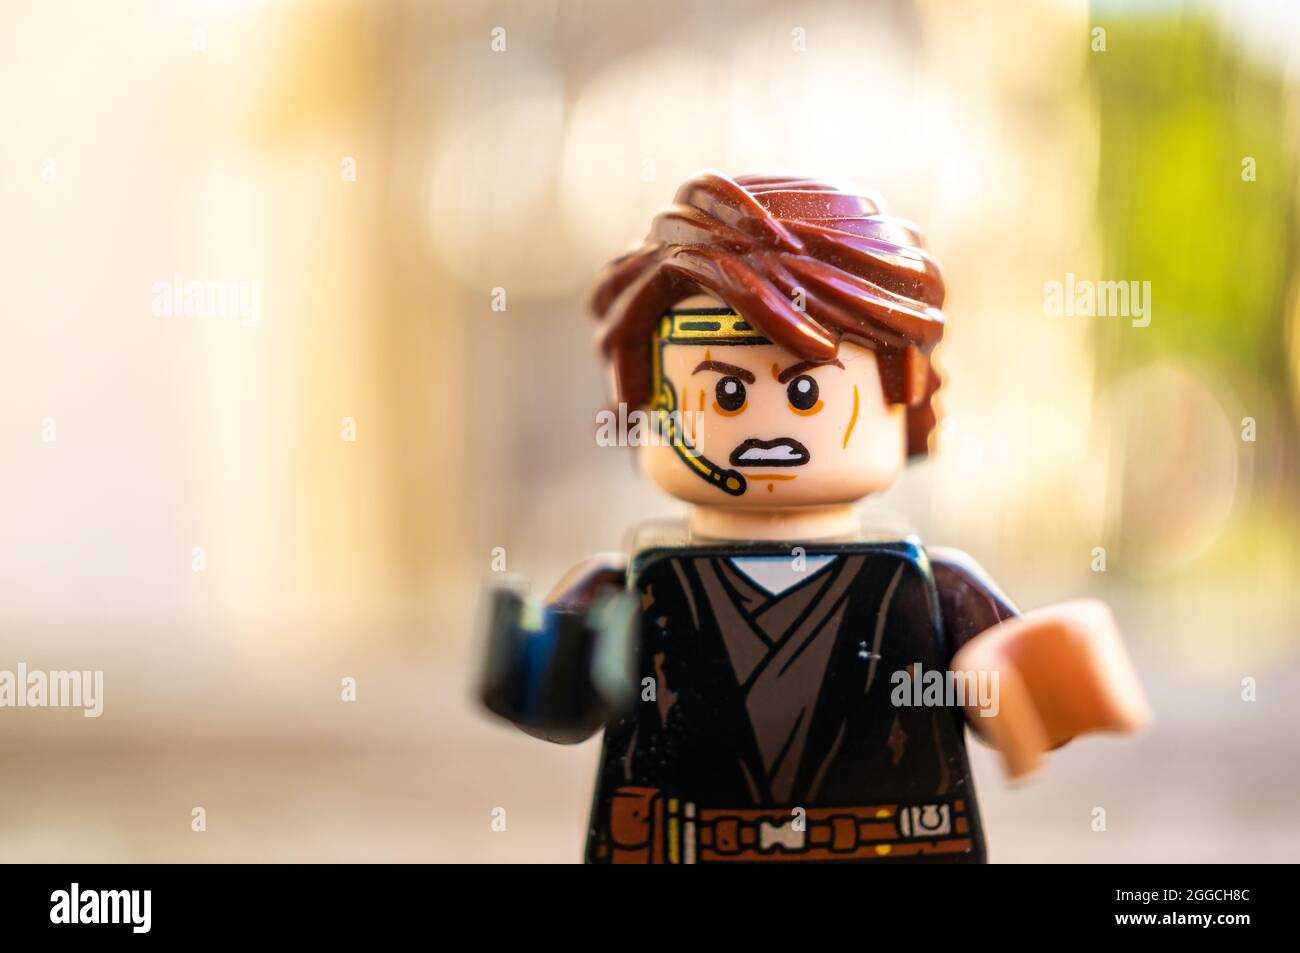 POZNAN, POLAND - Aug 09, 2021: The Lego Star Wars Anakin Skywalker toy figurine Stock Photo